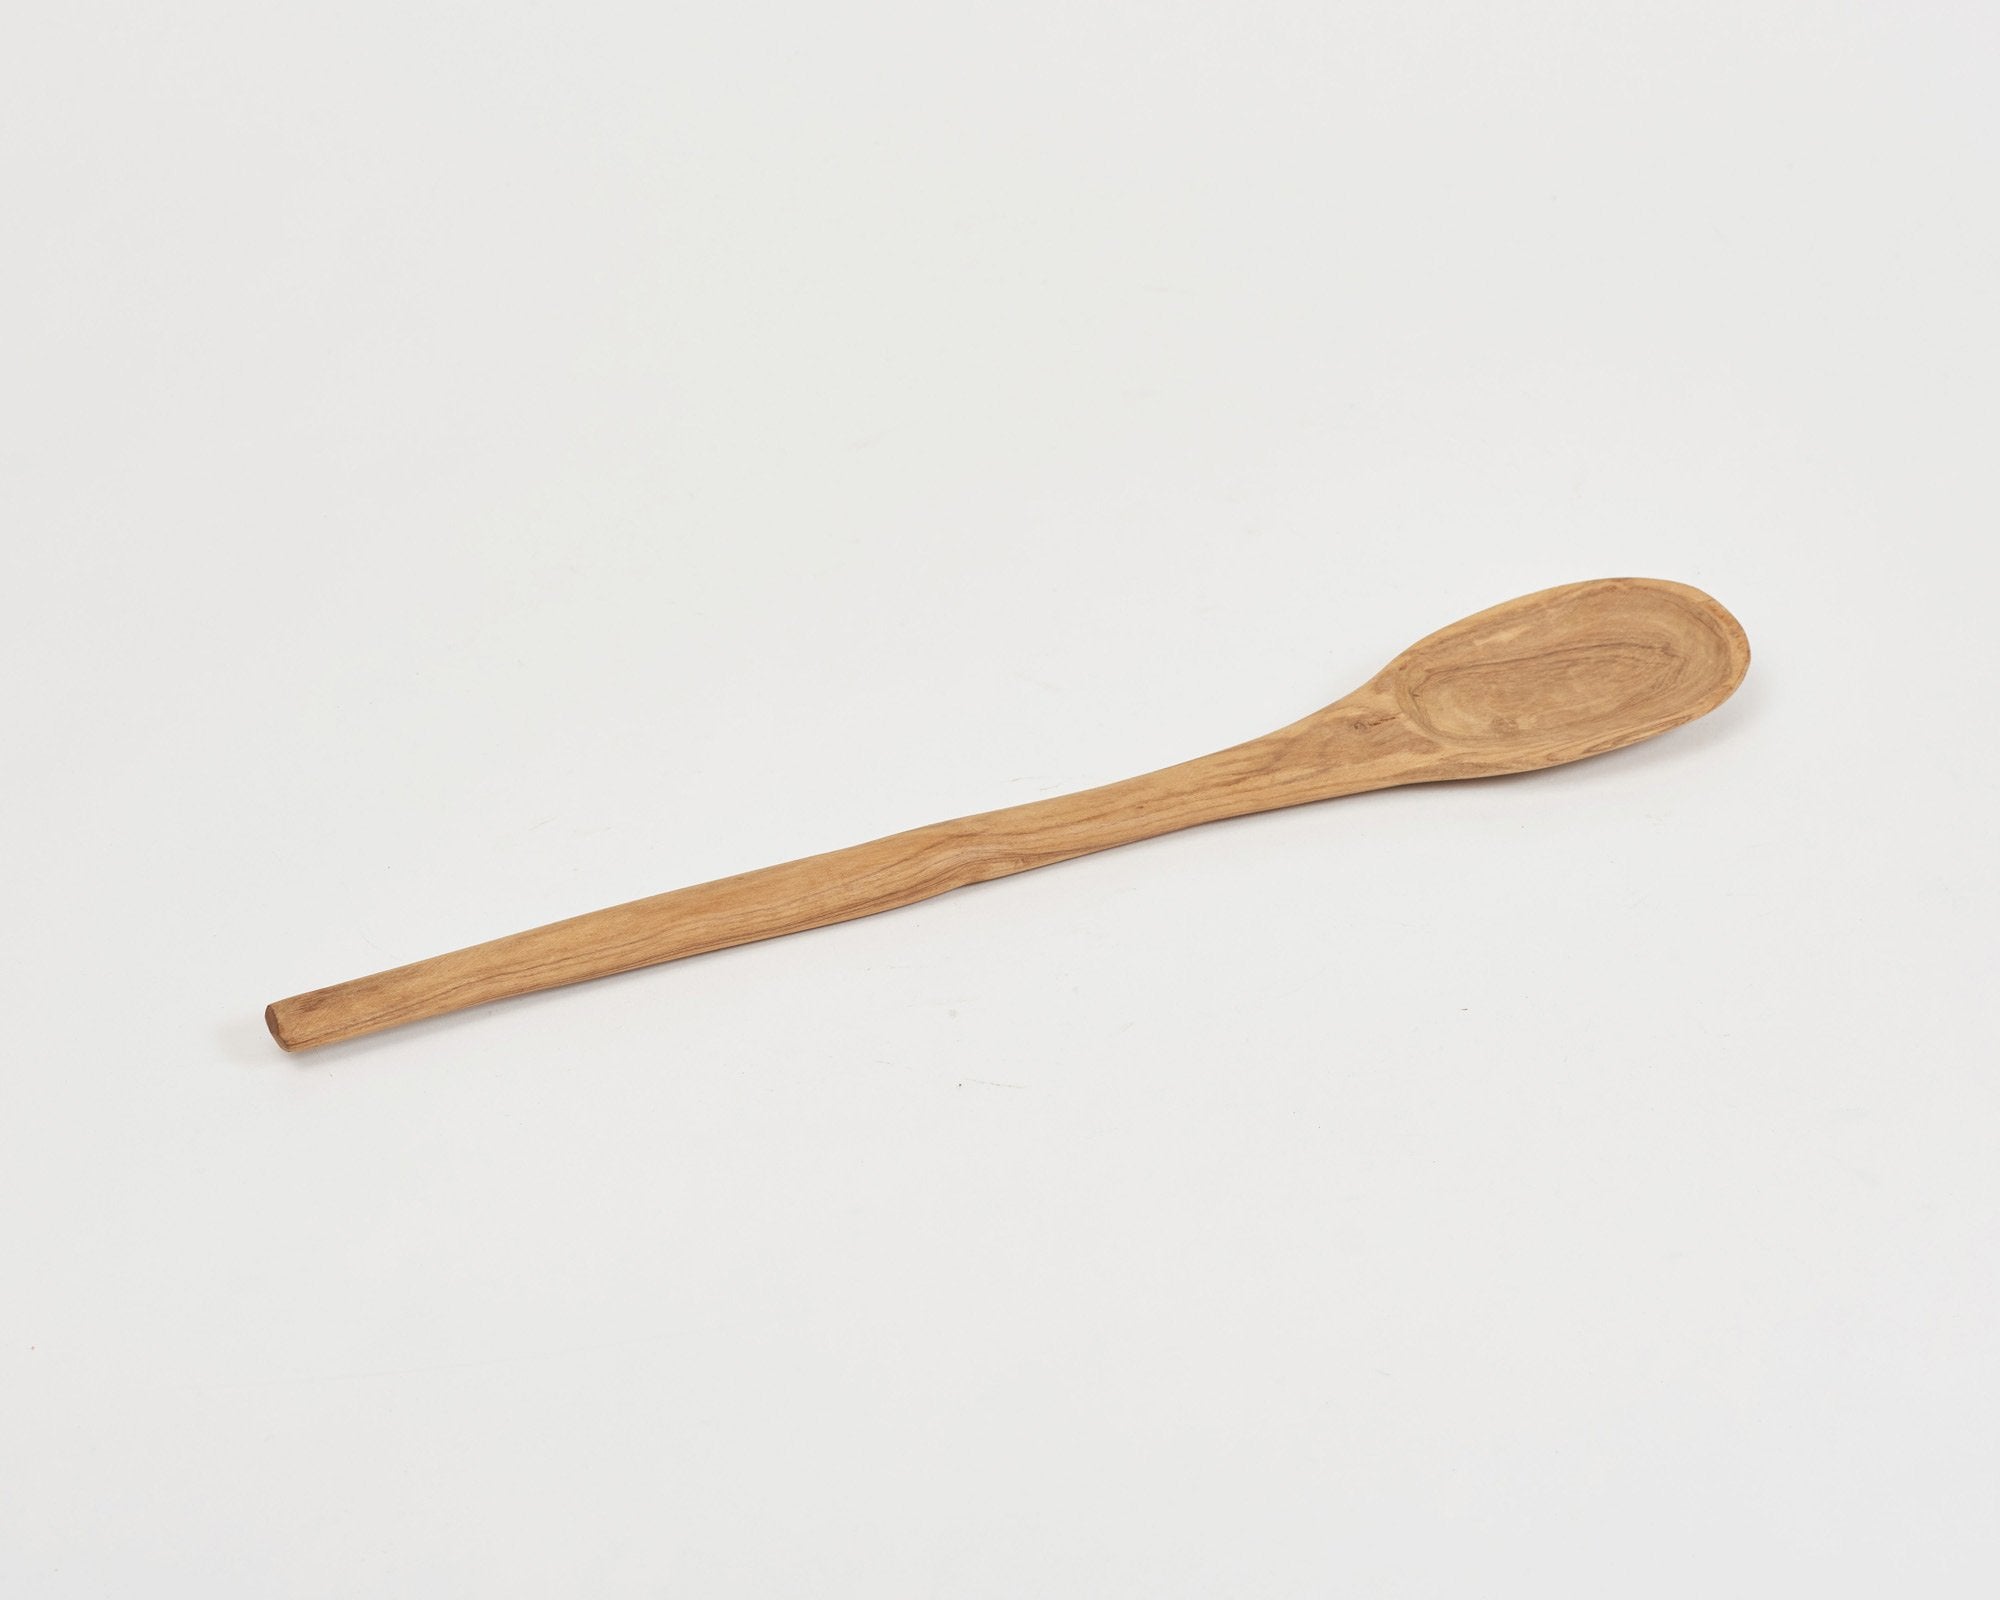 Wooden Street Spoon